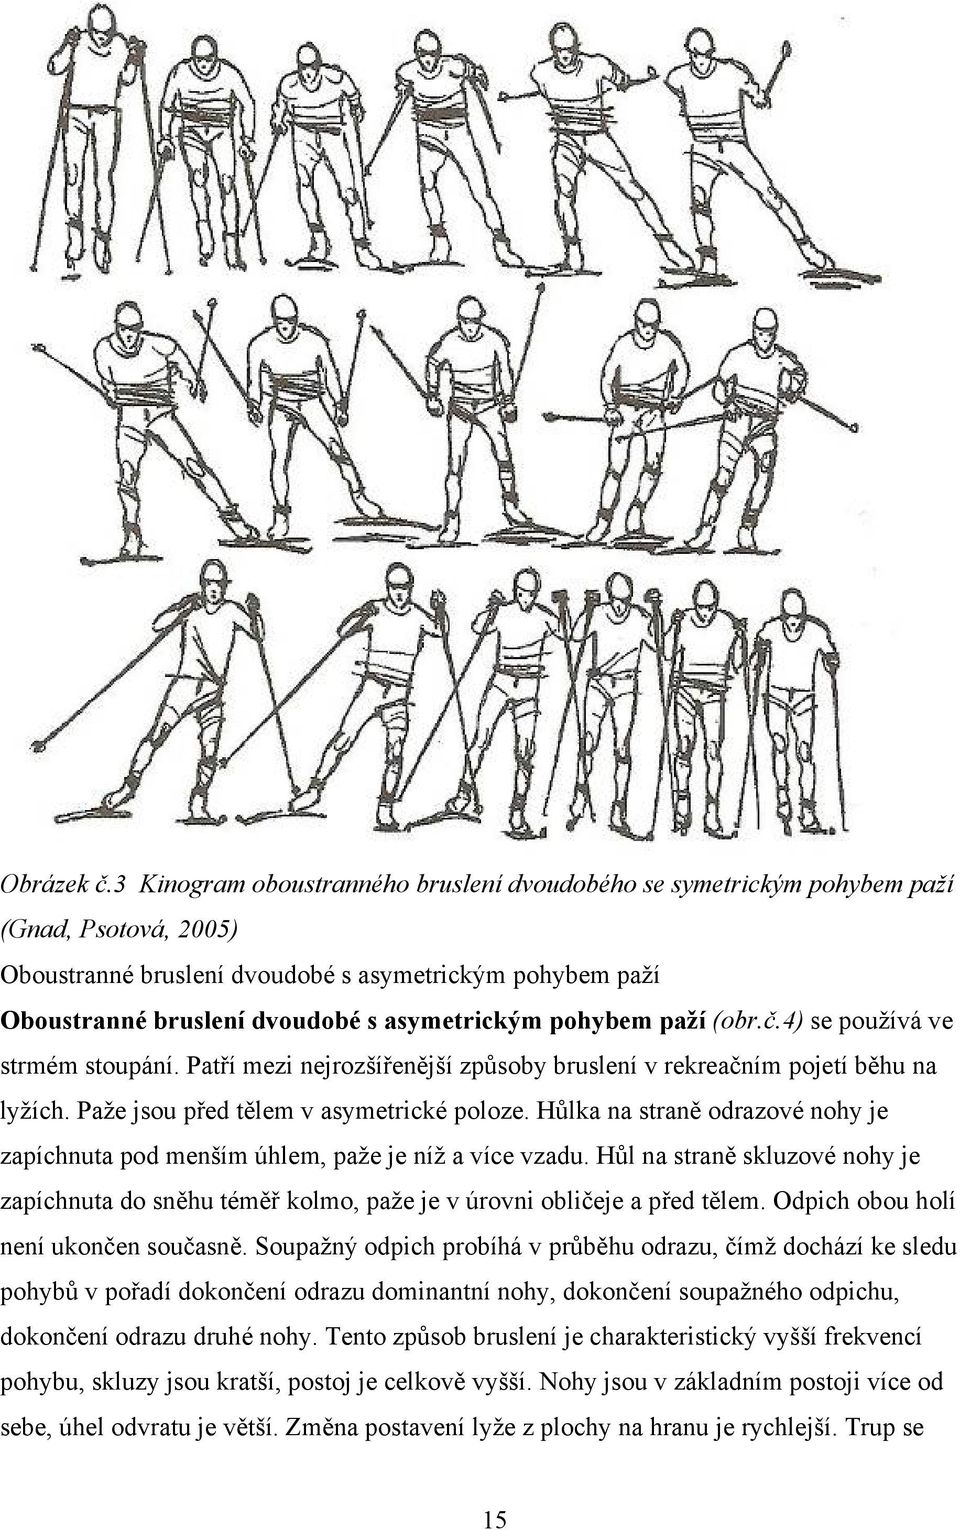 pohybem paží (obr.č.4) se používá ve strmém stoupání. Patří mezi nejrozšířenější způsoby bruslení v rekreačním pojetí běhu na lyžích. Paže jsou před tělem v asymetrické poloze.